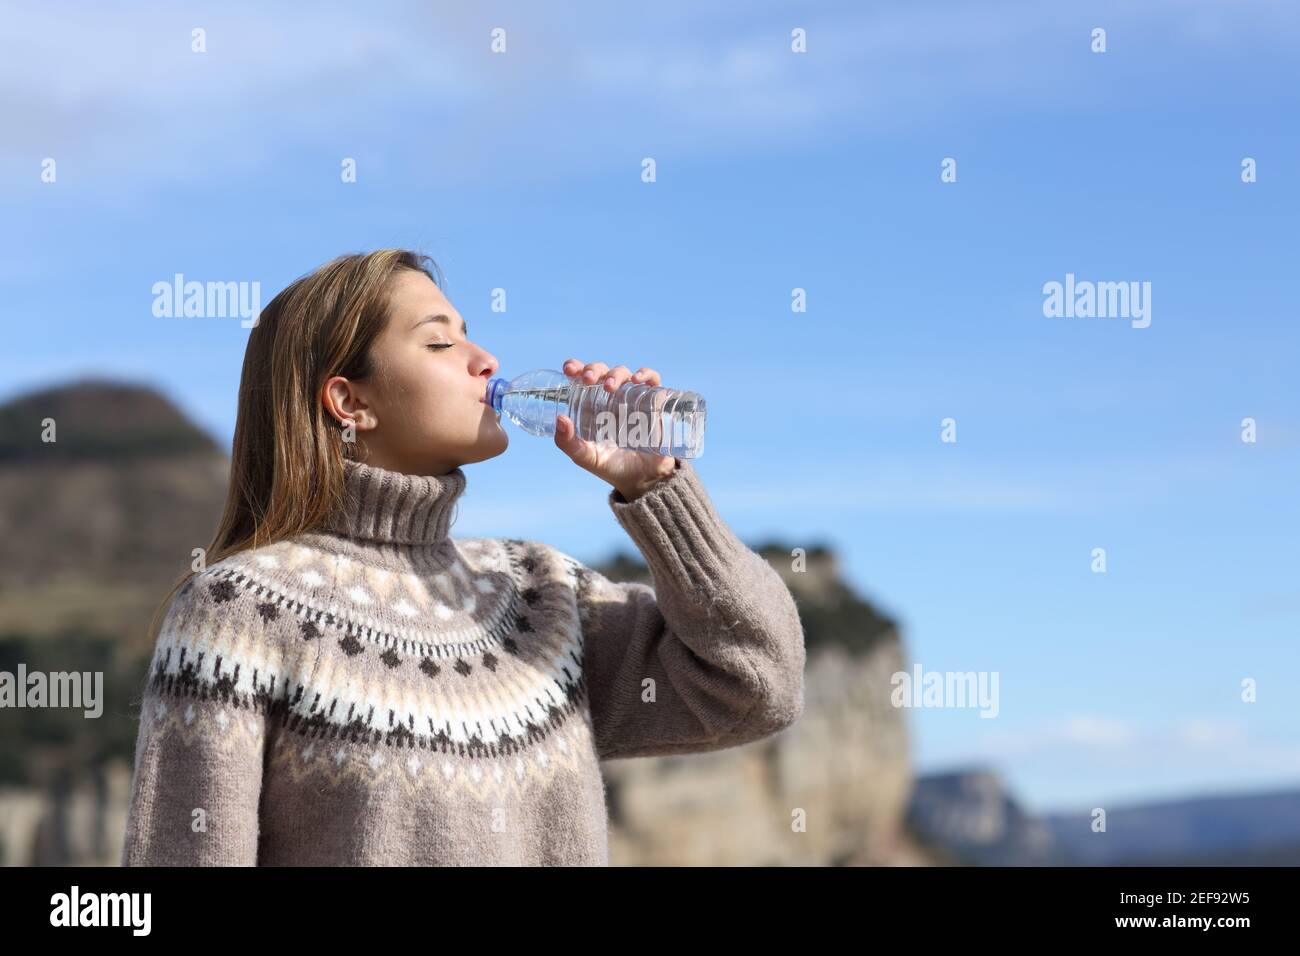 Vue latérale d'une femme buvant de l'eau en plastique bouteille en hiver dans la montagne Banque D'Images